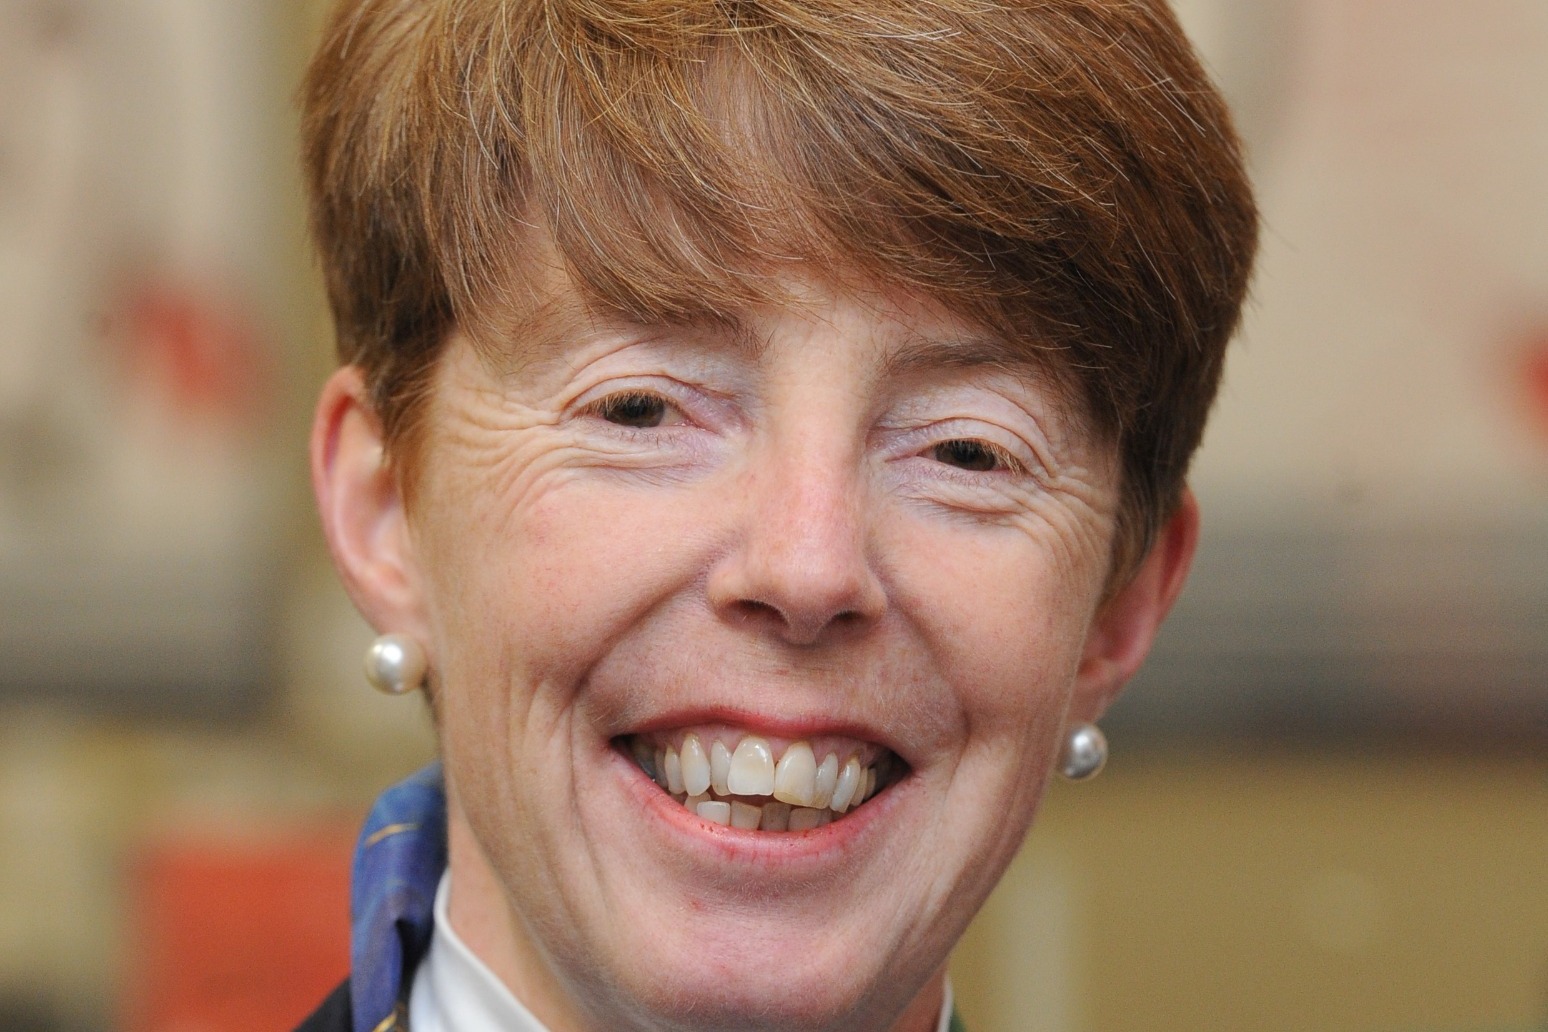 Former Post Office boss Paula Vennells to return CBE over Horizon scandal 